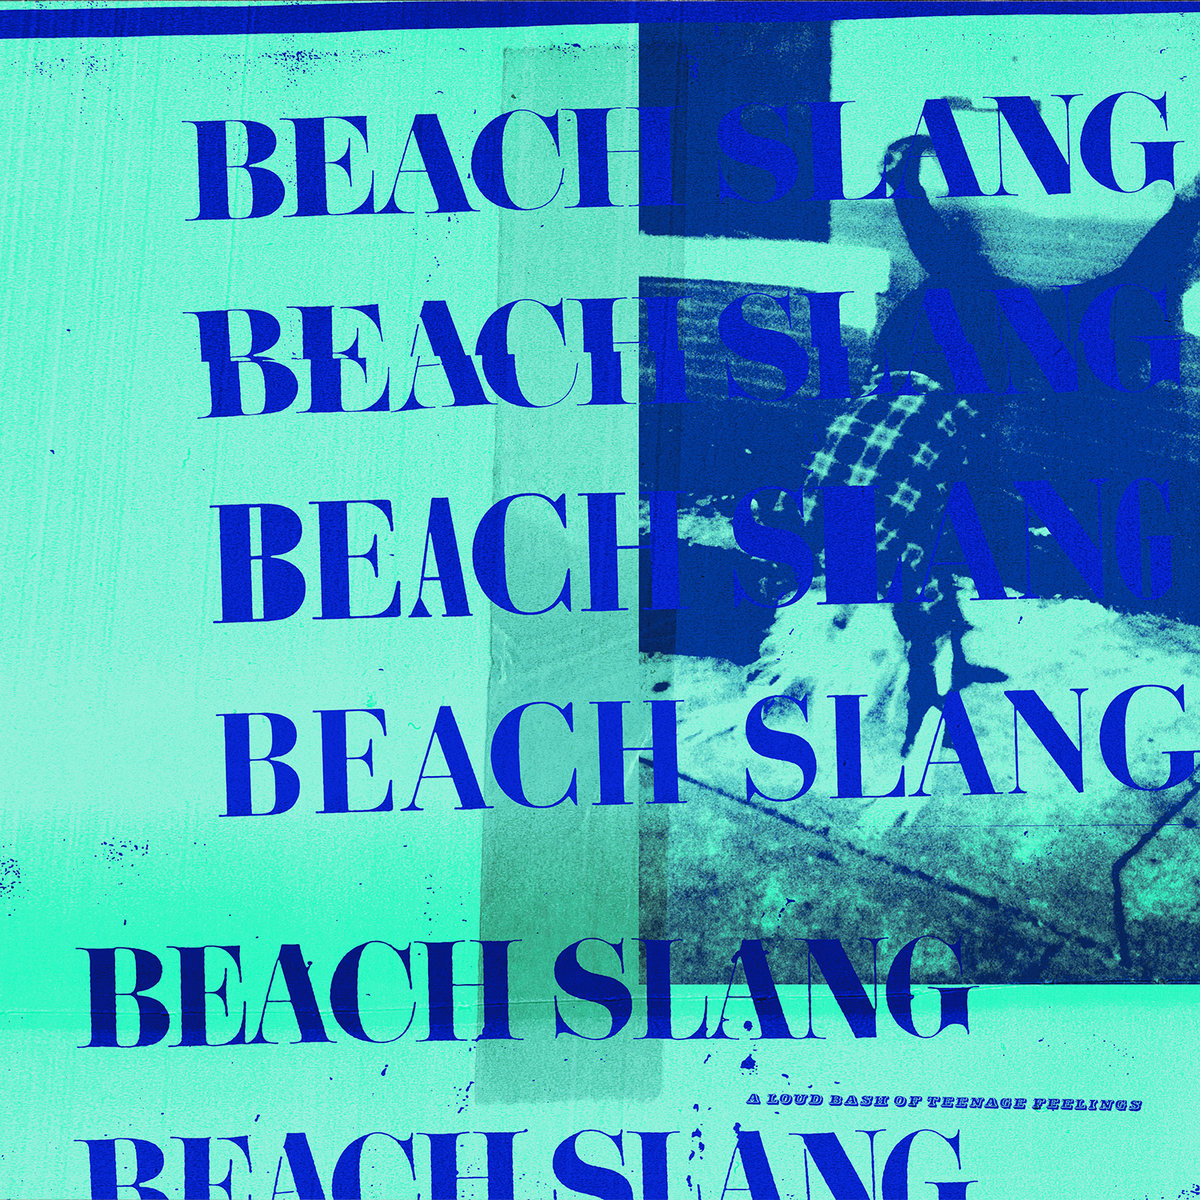 'A Loud Bash of Teenage Feelings' by Beach Slang, album review by Gregory Adams.